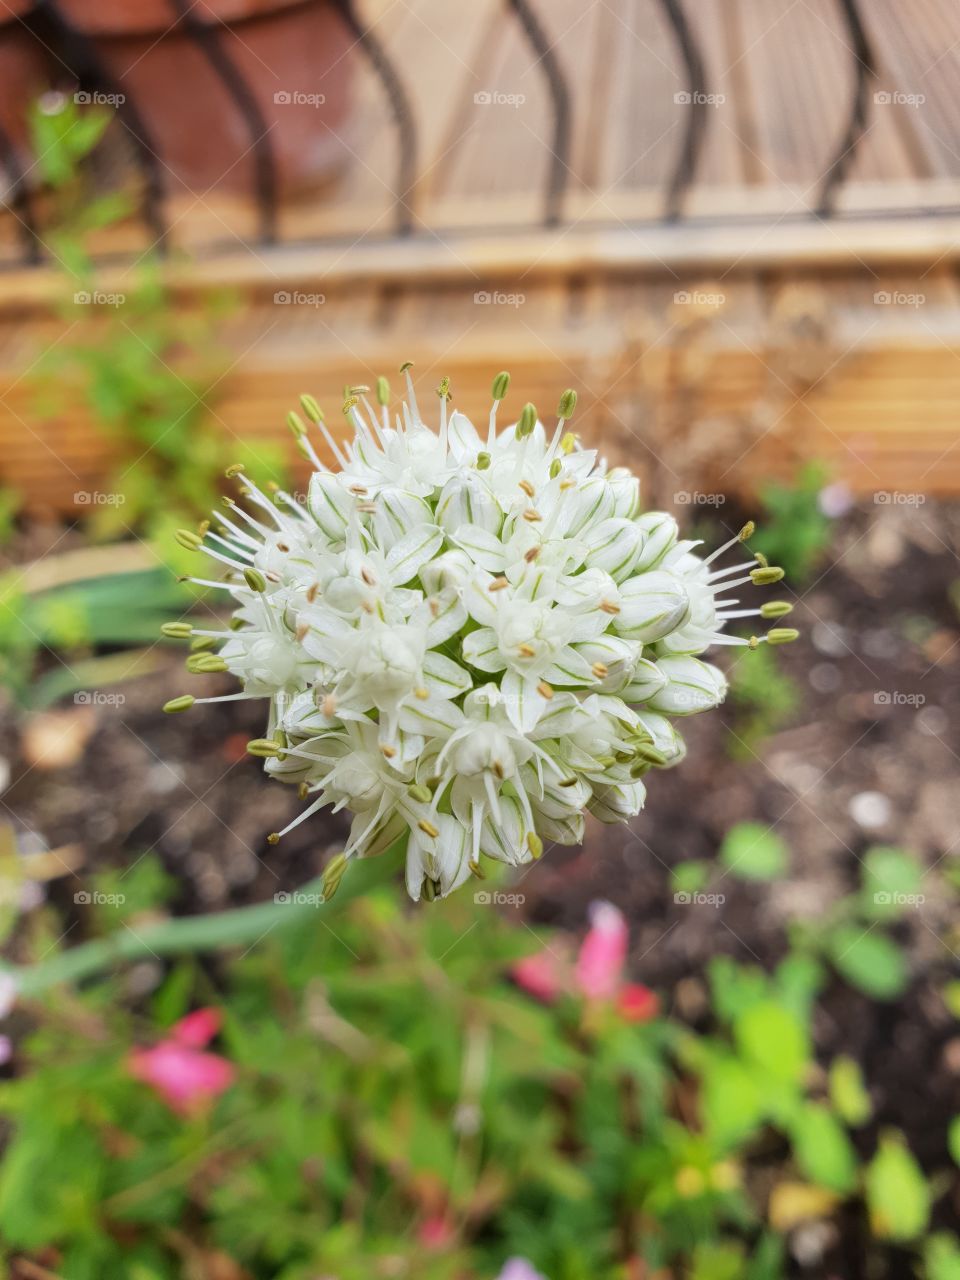 White onion flower